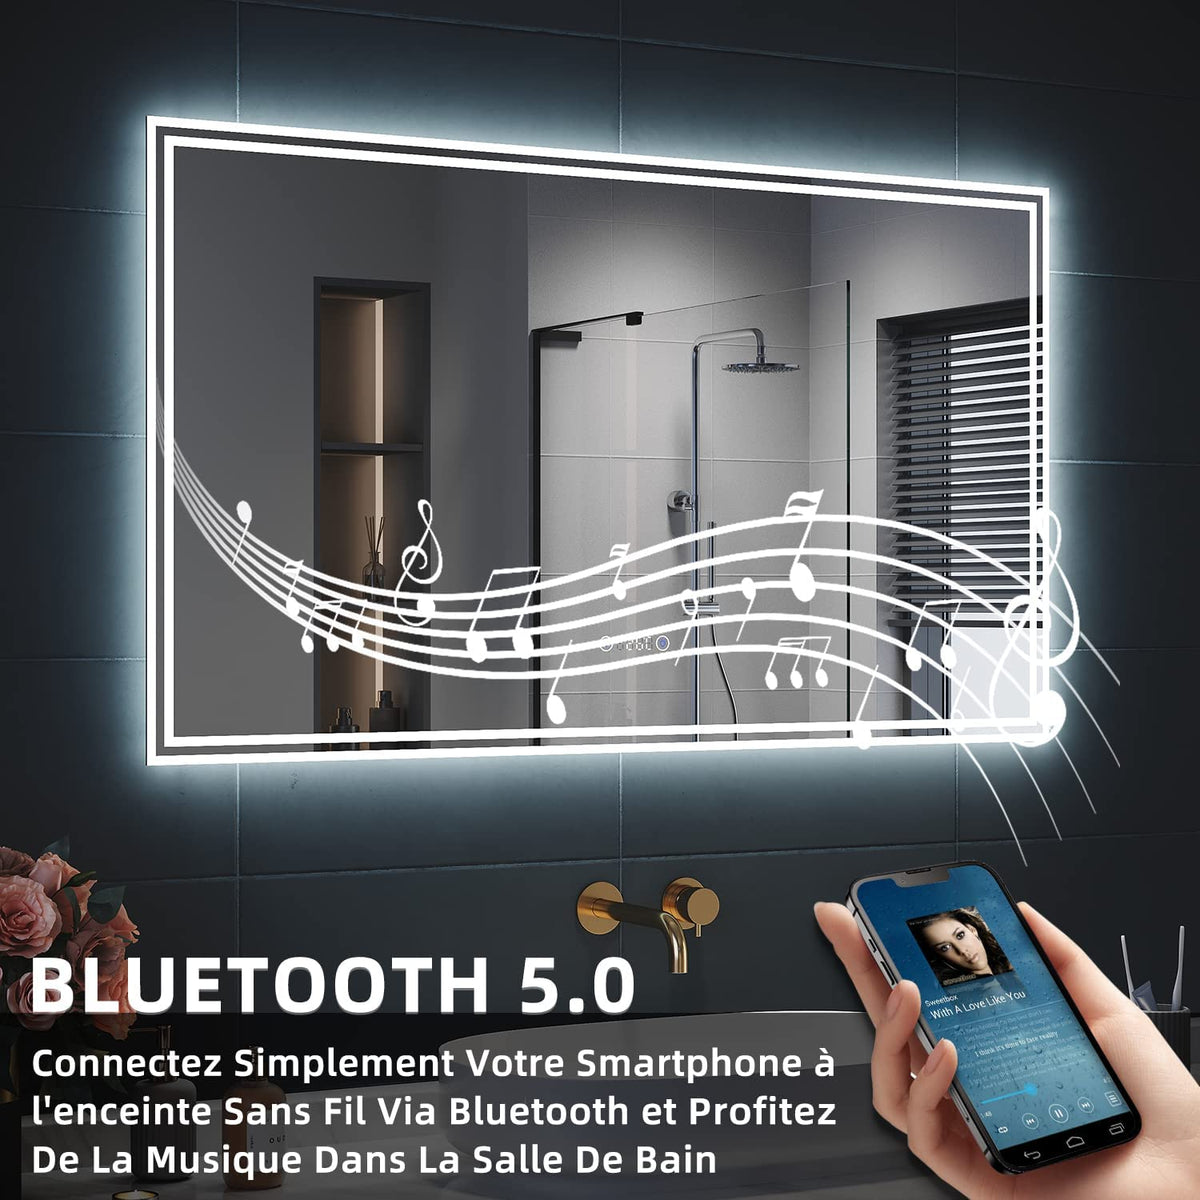 SIRHONA Miroir LED Salle de Bain Bluetooth 120x70cm Miroir Lumineux Salle de Bain avec Eclairage Intégré, Anti-buée, Affichage de L'heure et Température - SIRHONA